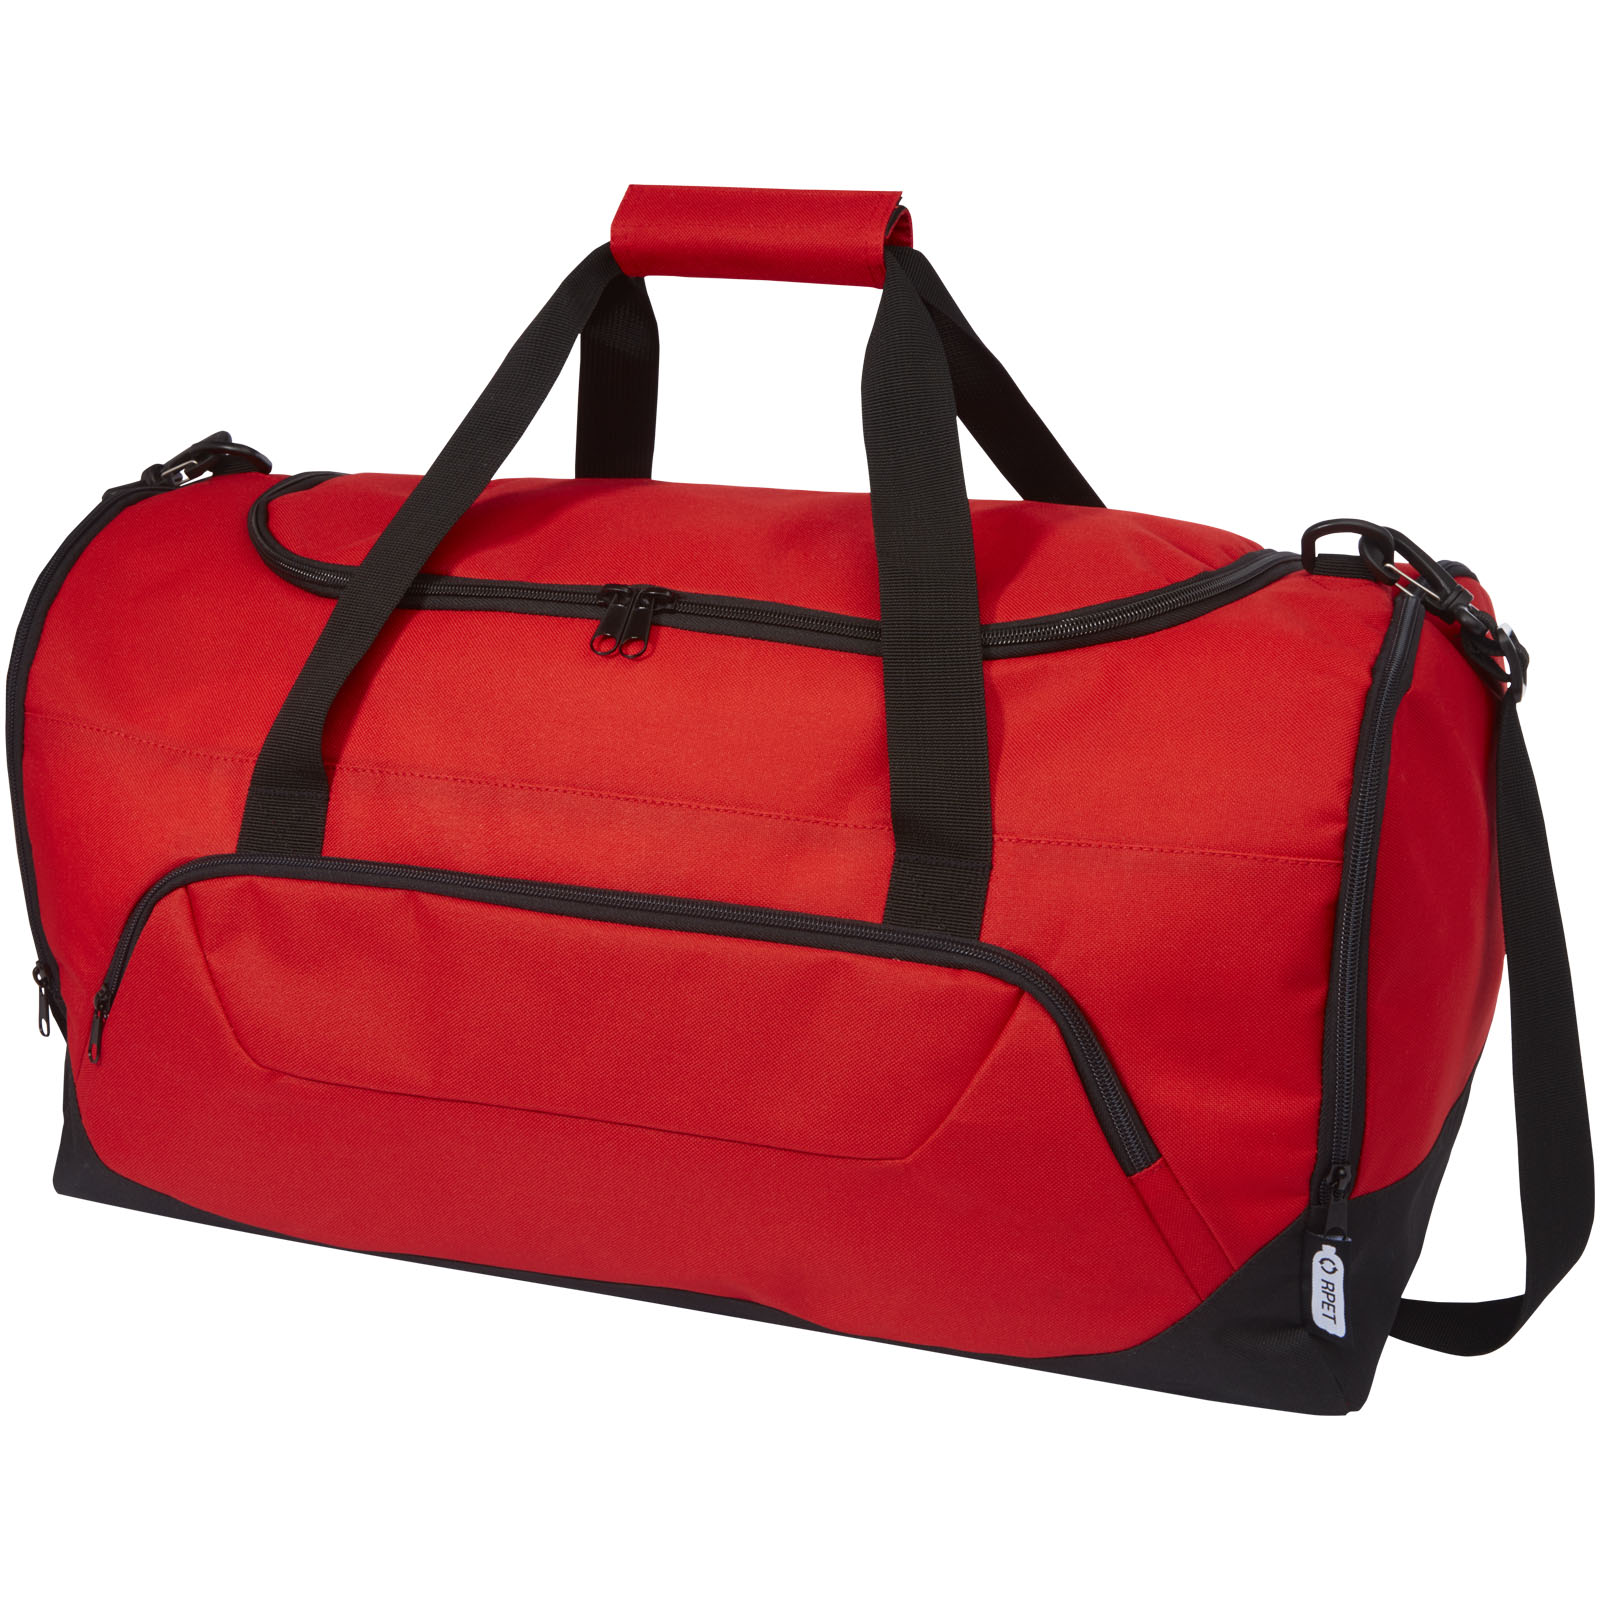 Bags - Retrend GRS RPET duffel bag 40L